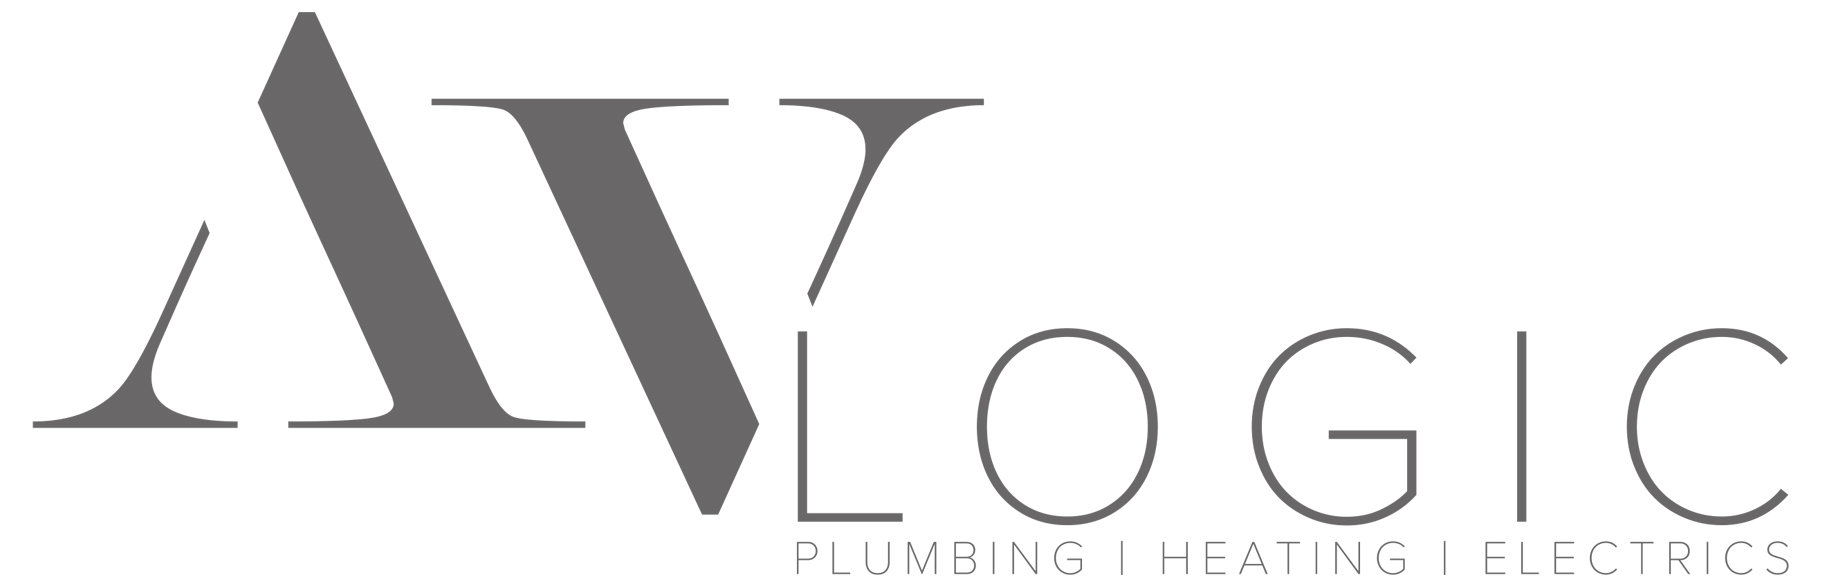 AV Logic Logo